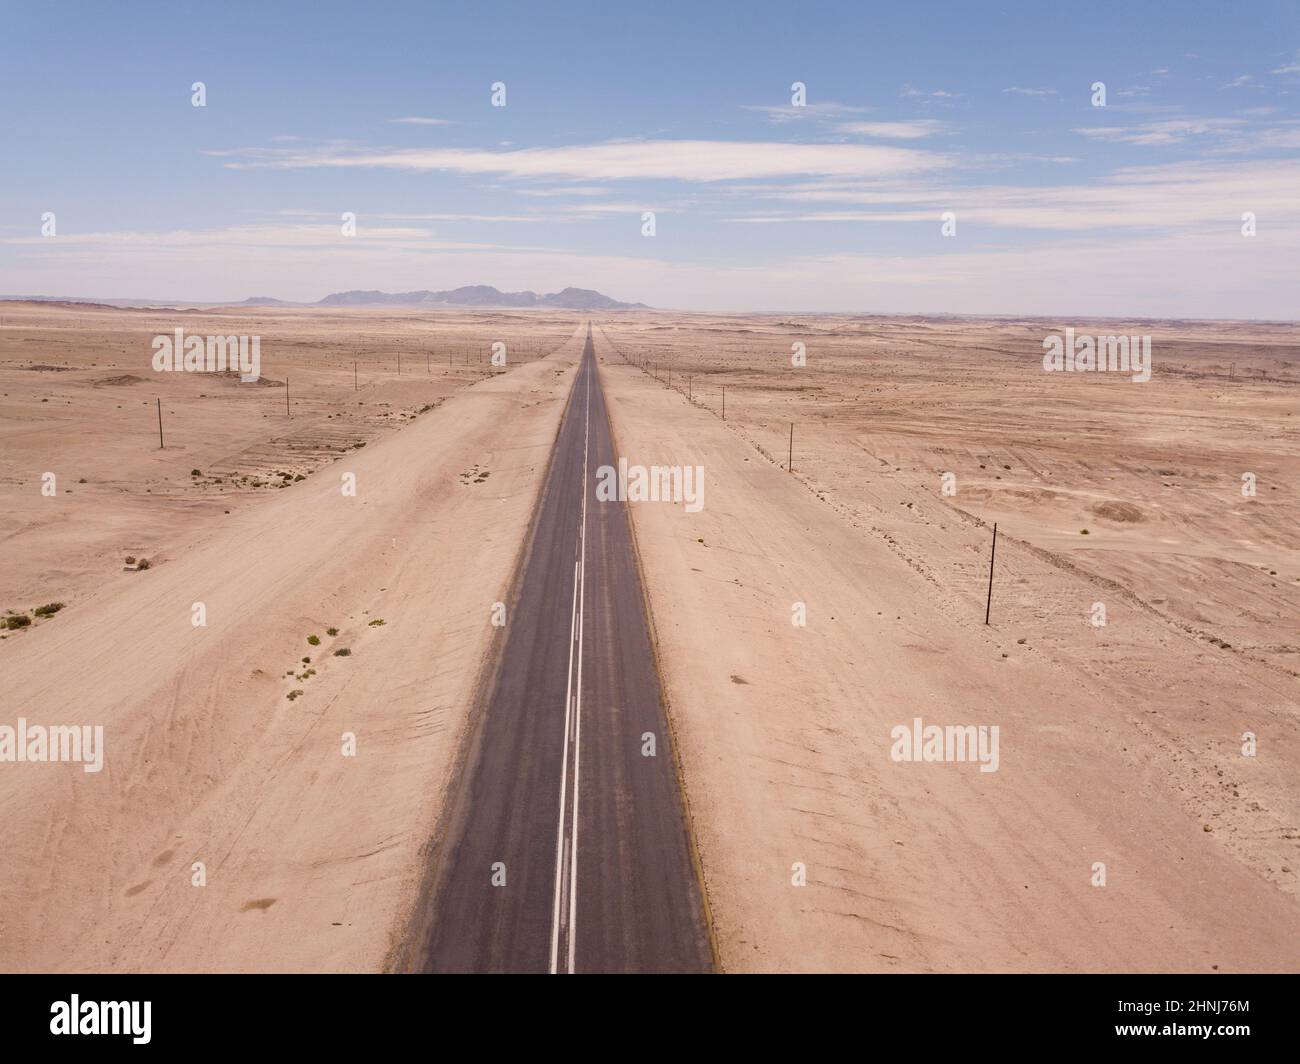 Open road in  a desert landscape Stock Photo